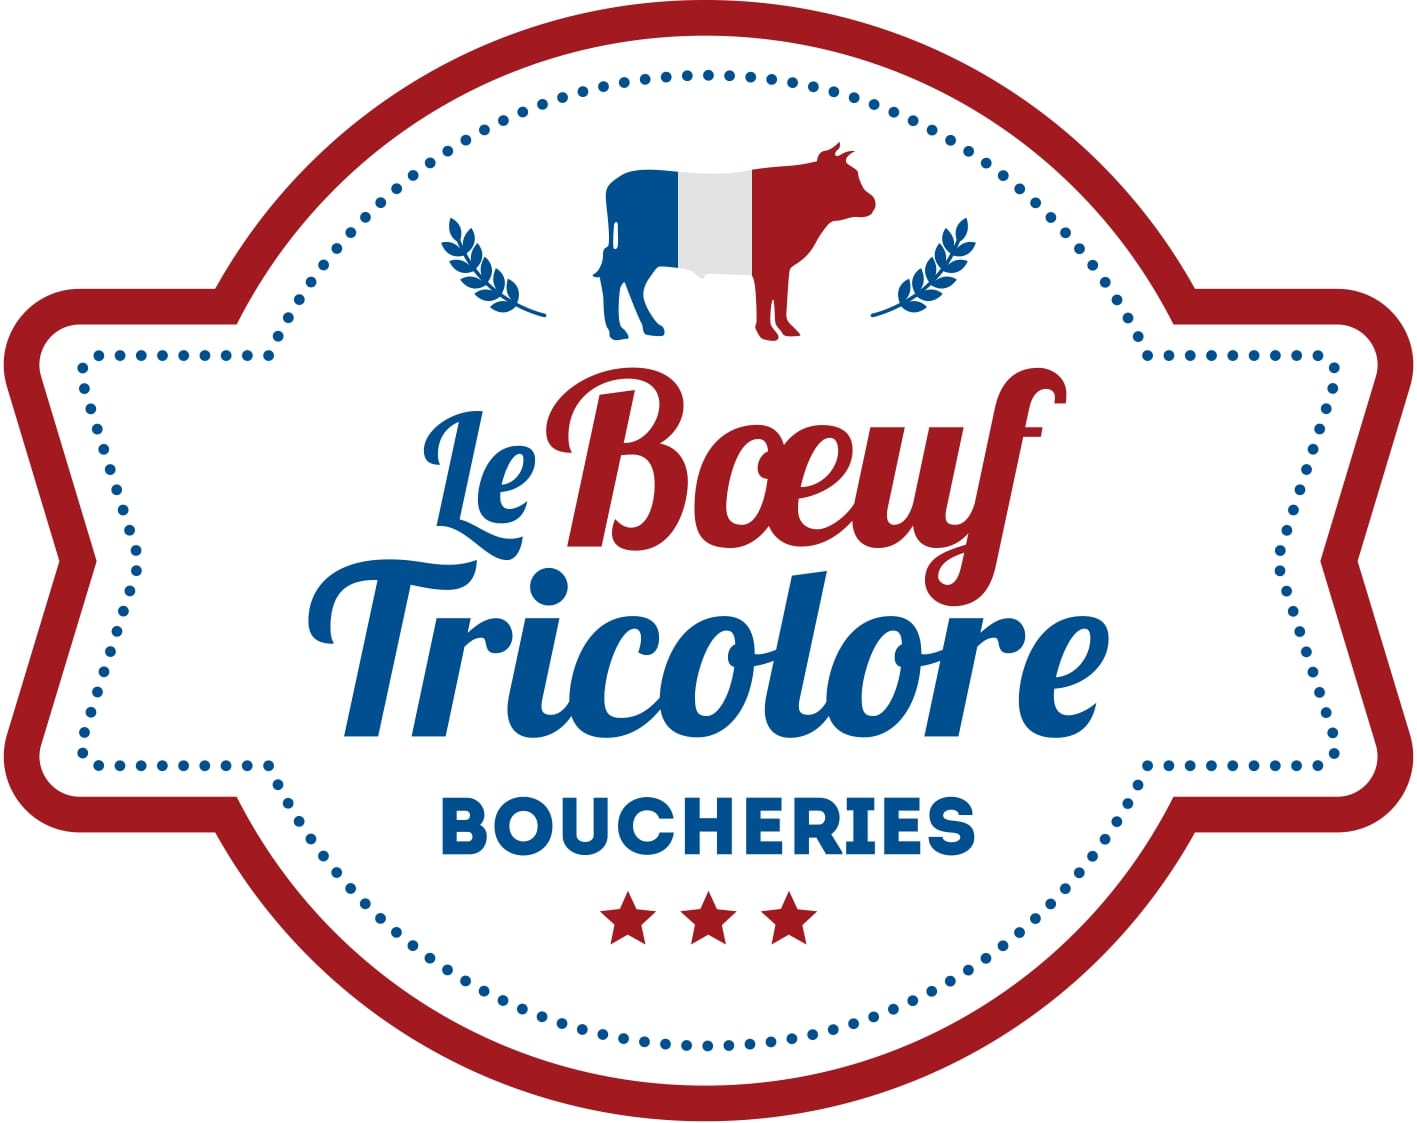 Boucherie Bœuf Tricolore